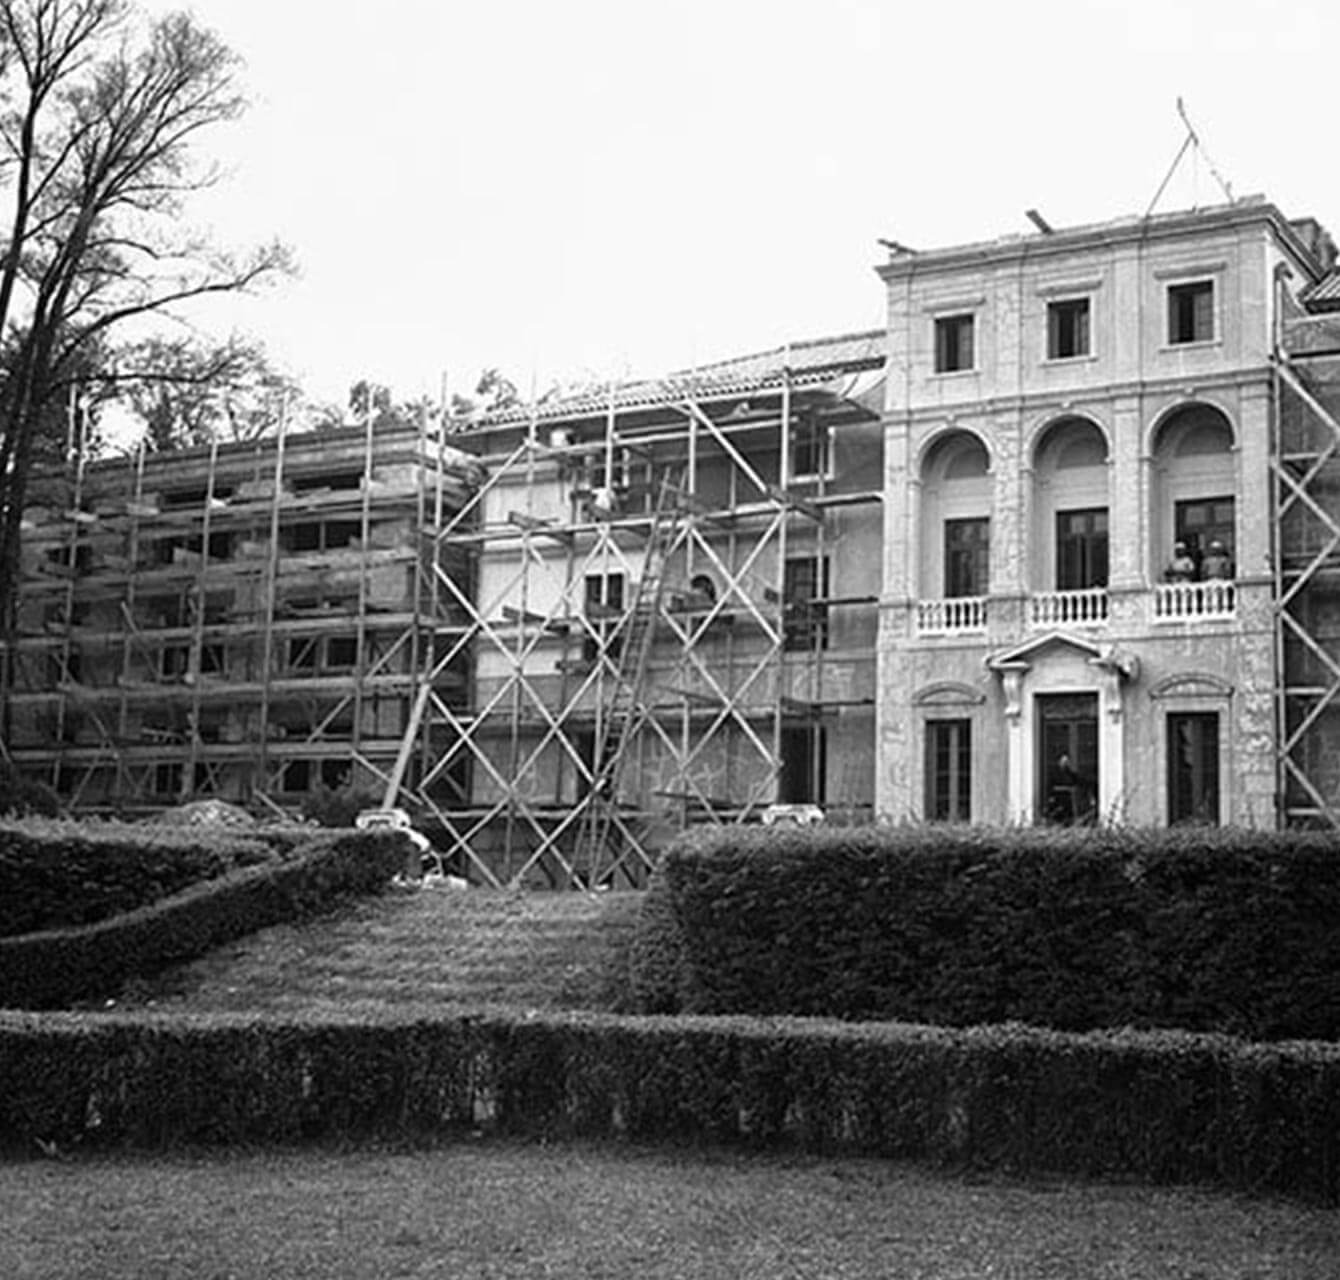 Monastery Construction in Progress at Geneva On The Lake